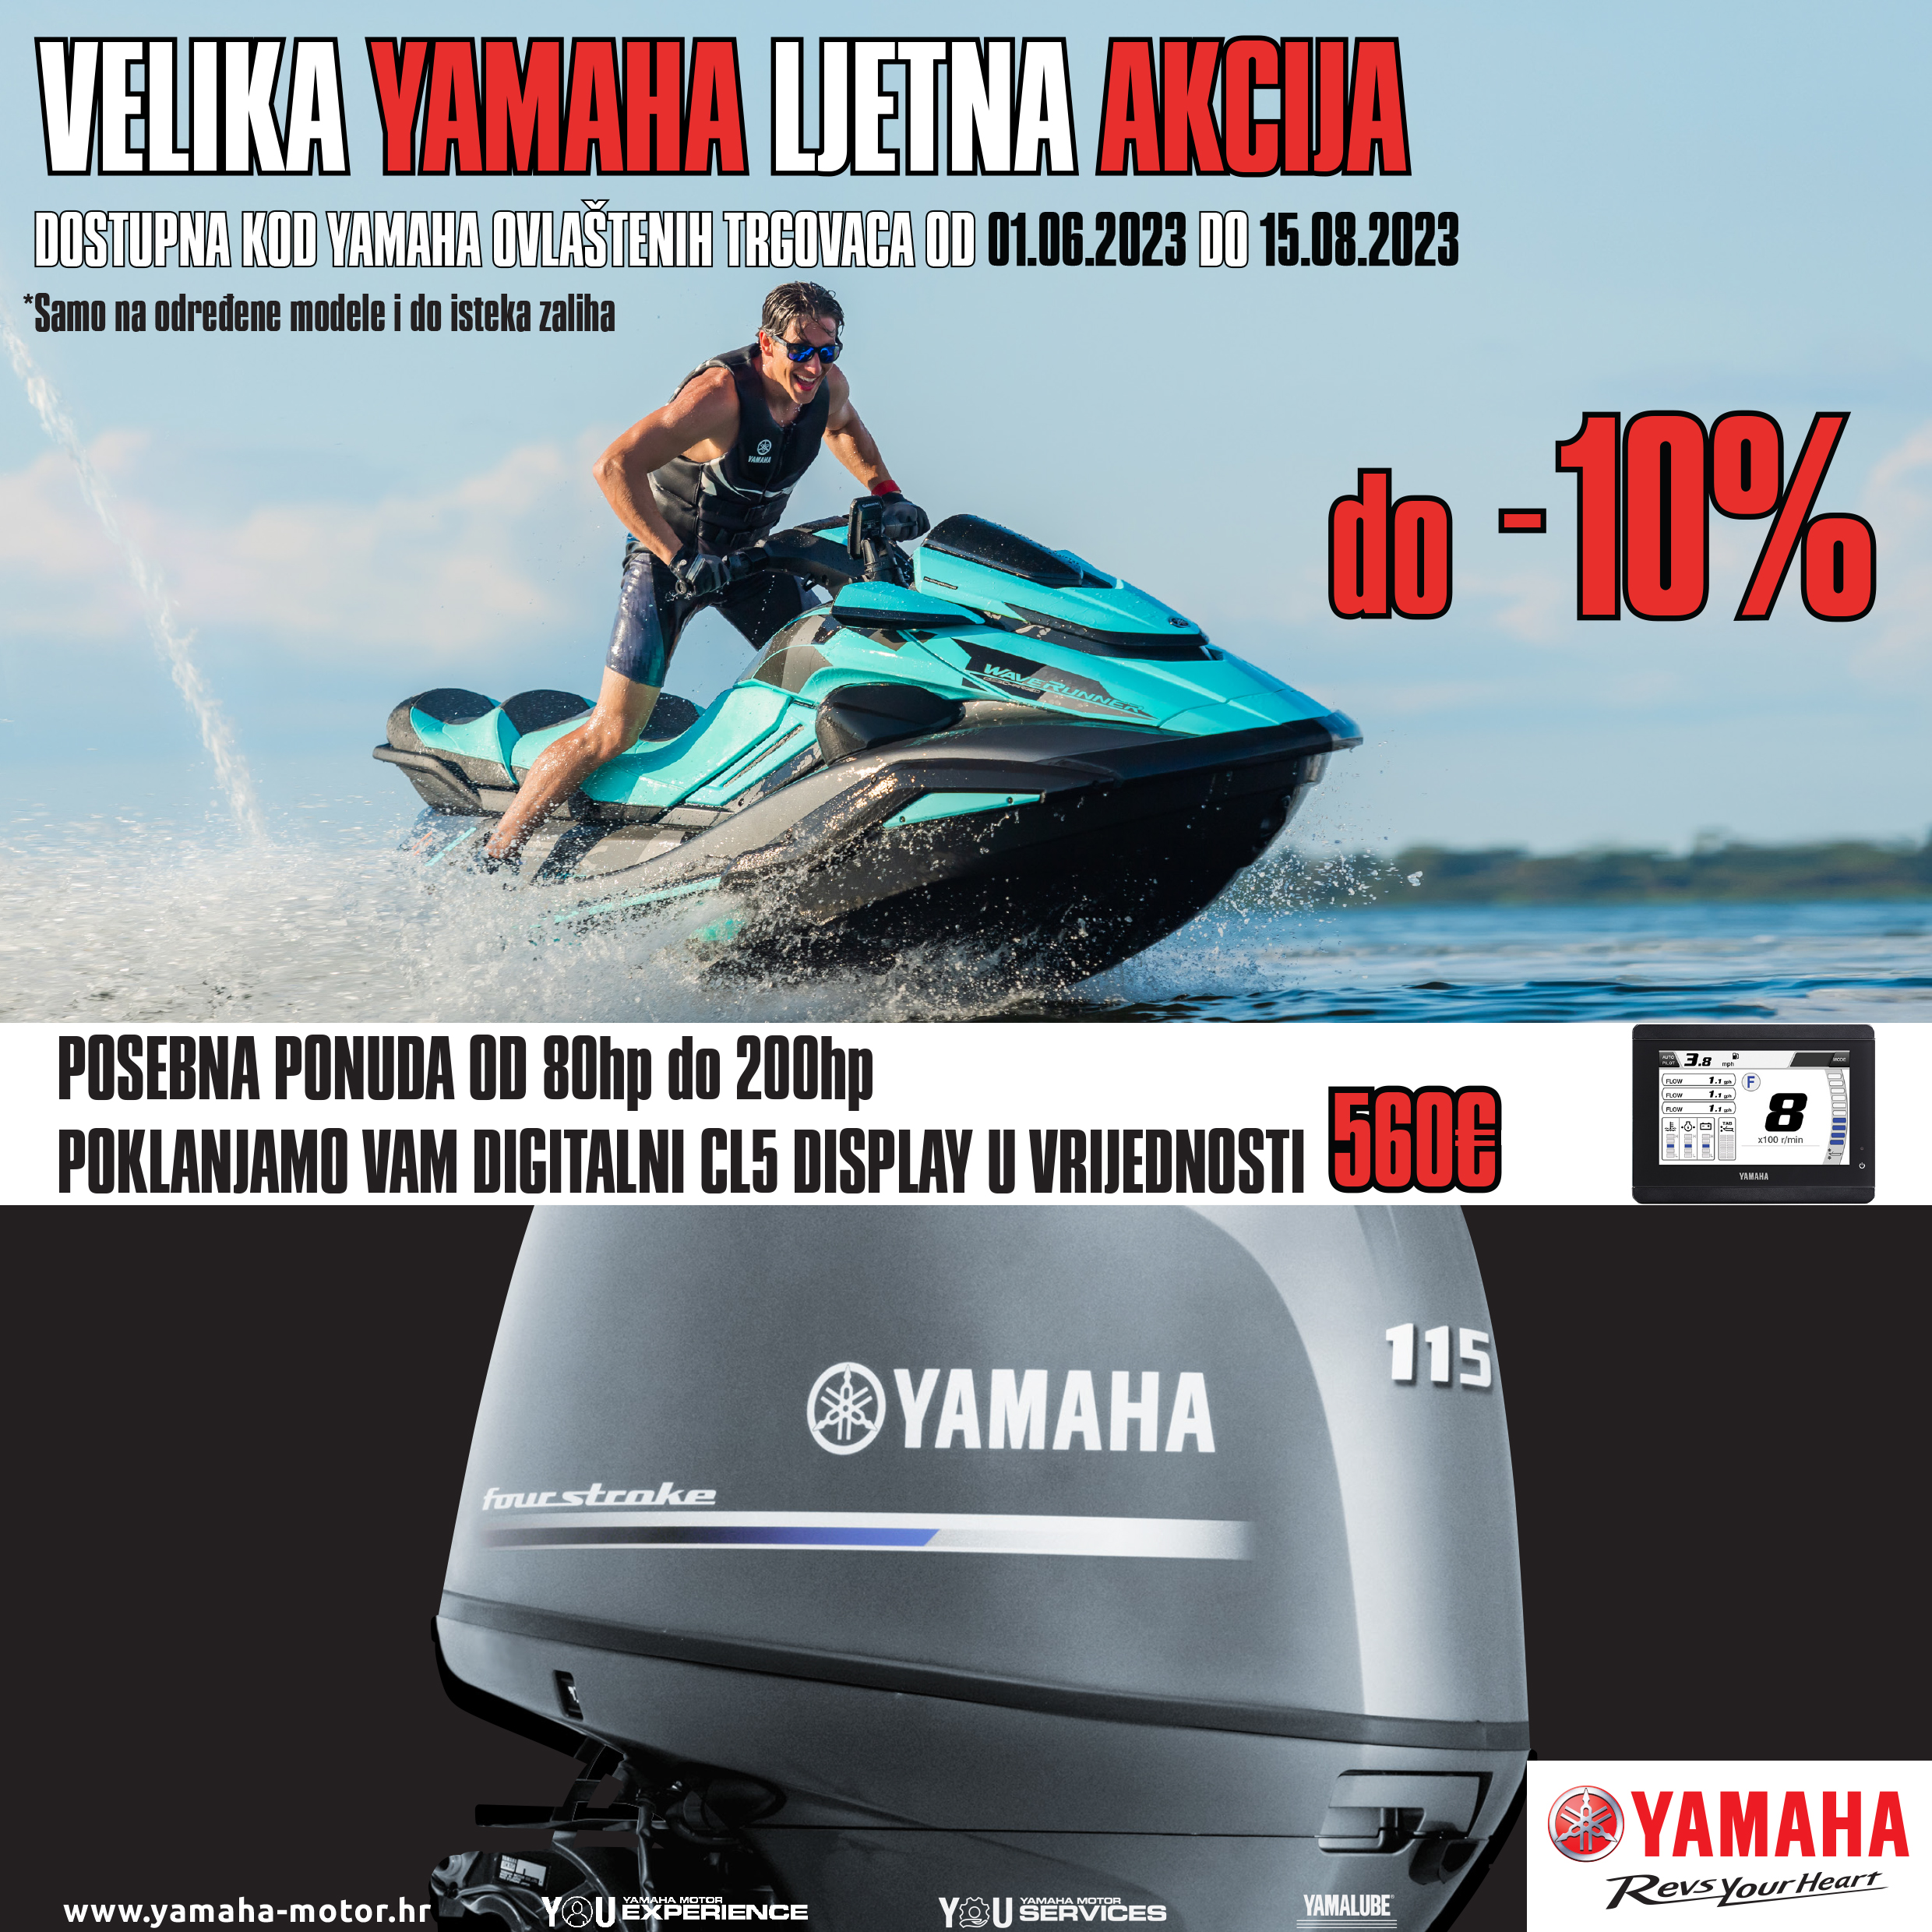 Moto plus Ikica - Yamaha akcija